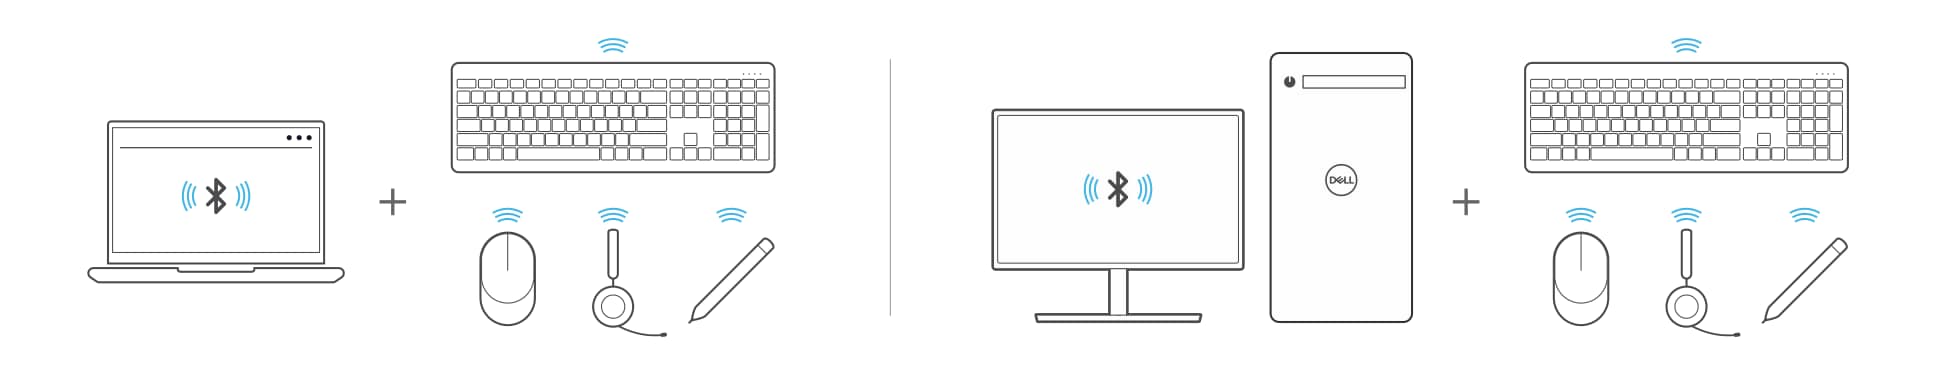 Kopplung von Laptop und Desktop mit Bluetooth-Geräten wie Tastatur, Maus, Headset oder einem Stift